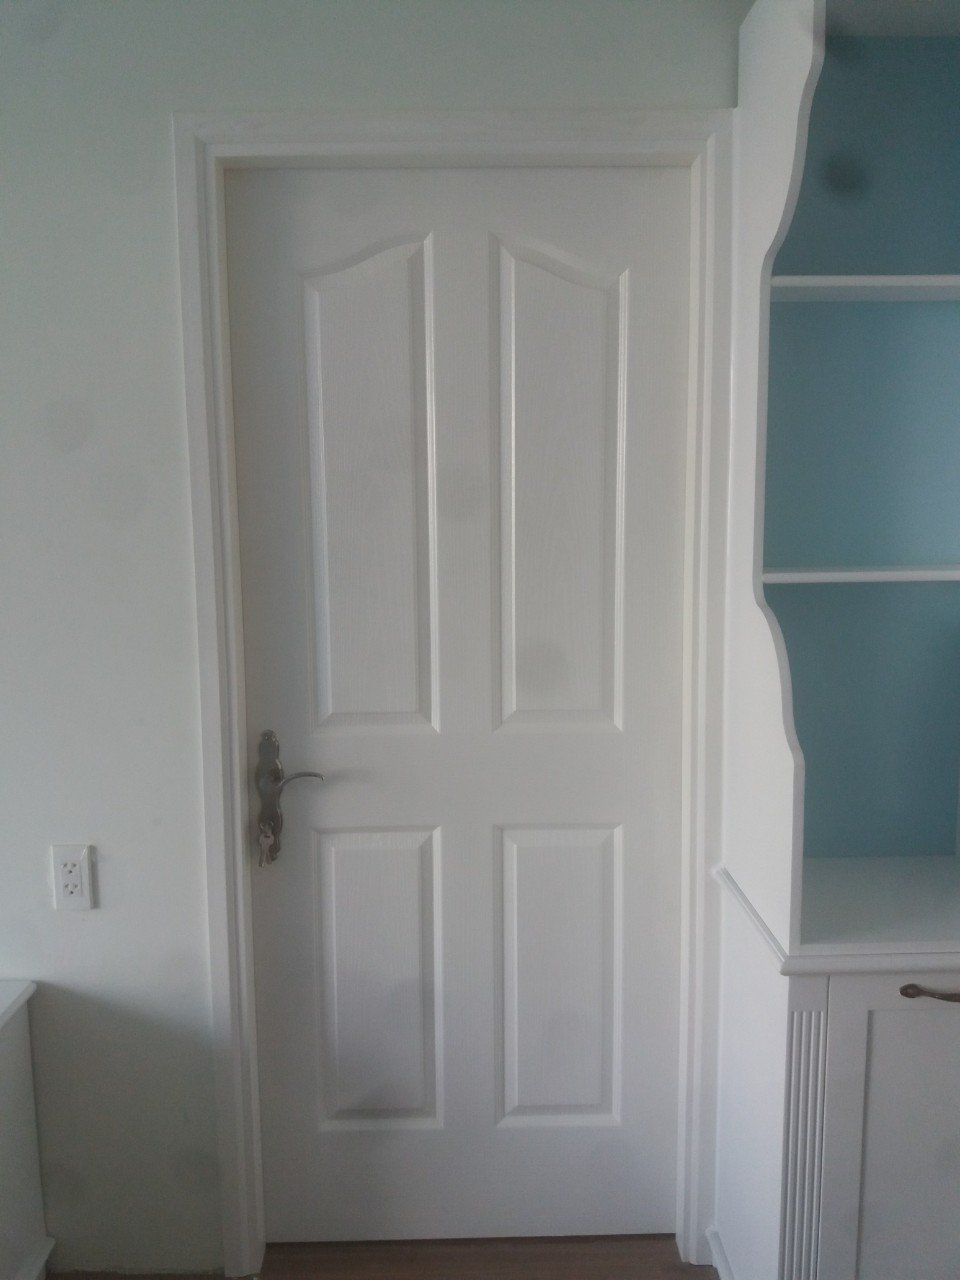 Cửa gỗ công nghiệp HDF sơn - cửa phòng ngủ giá rẻ.